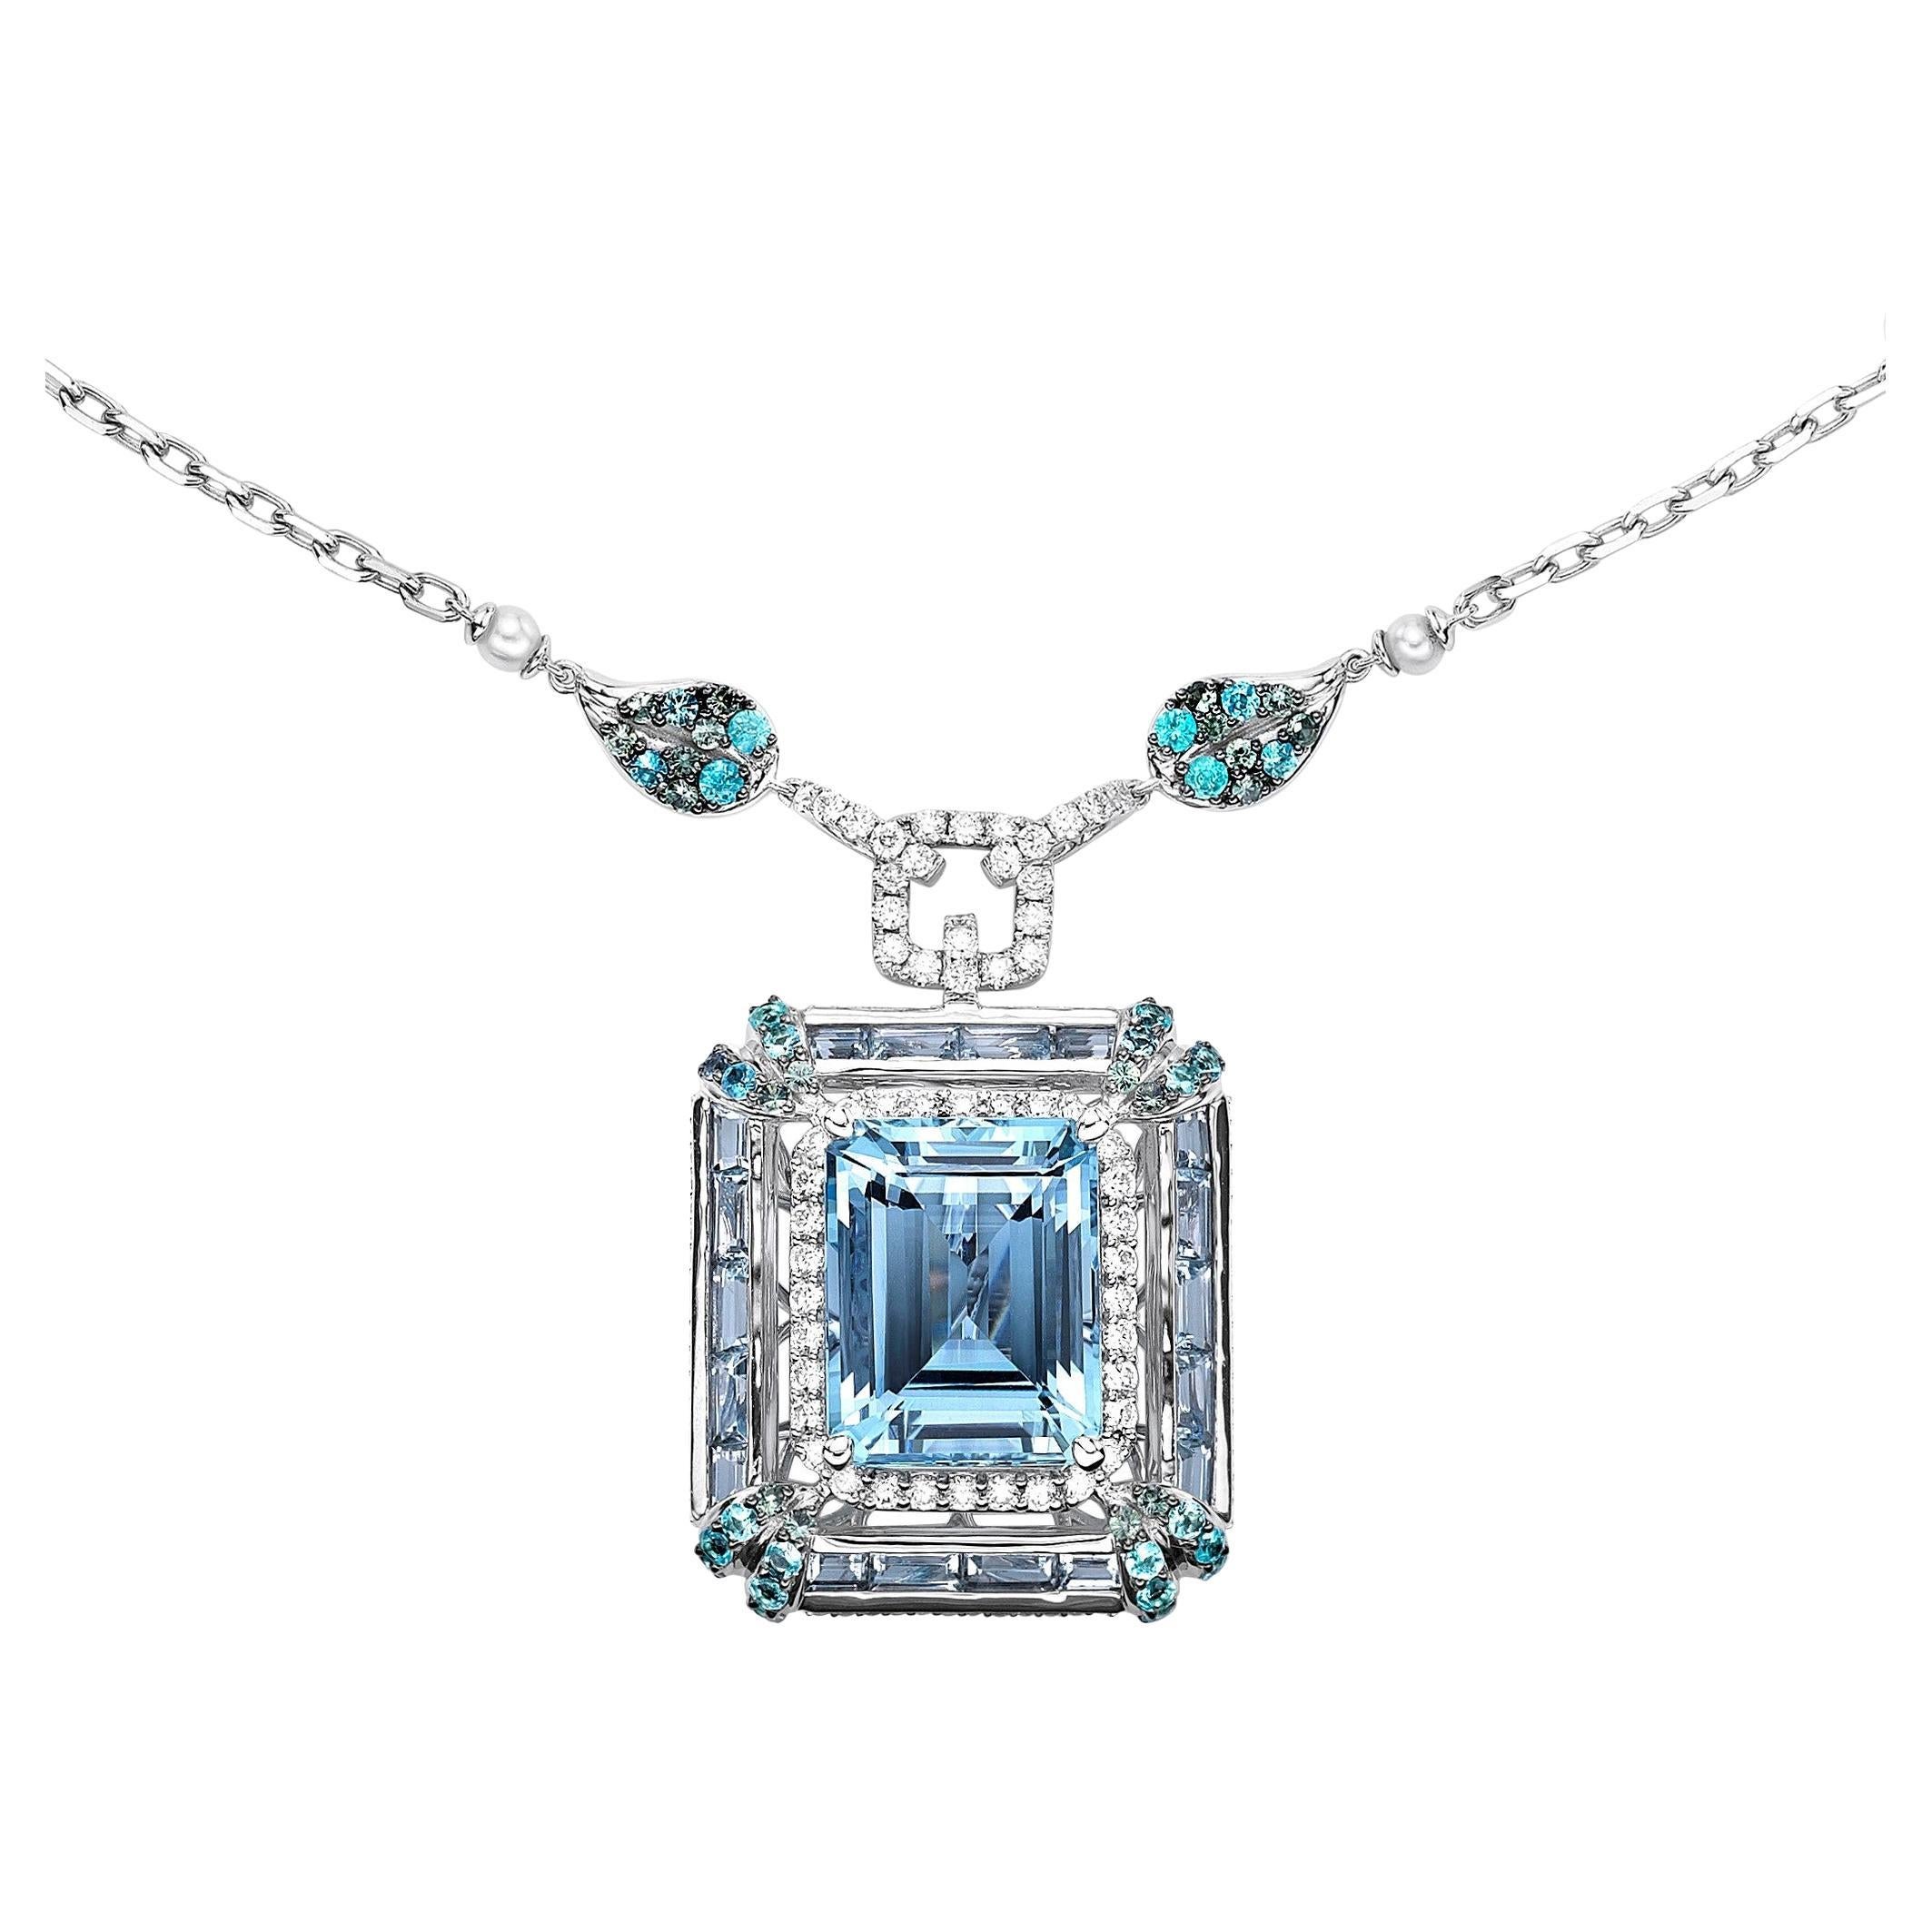 Collier d'aigue-marine avec paraiba, alexandrite, perle et diamant 18 carats